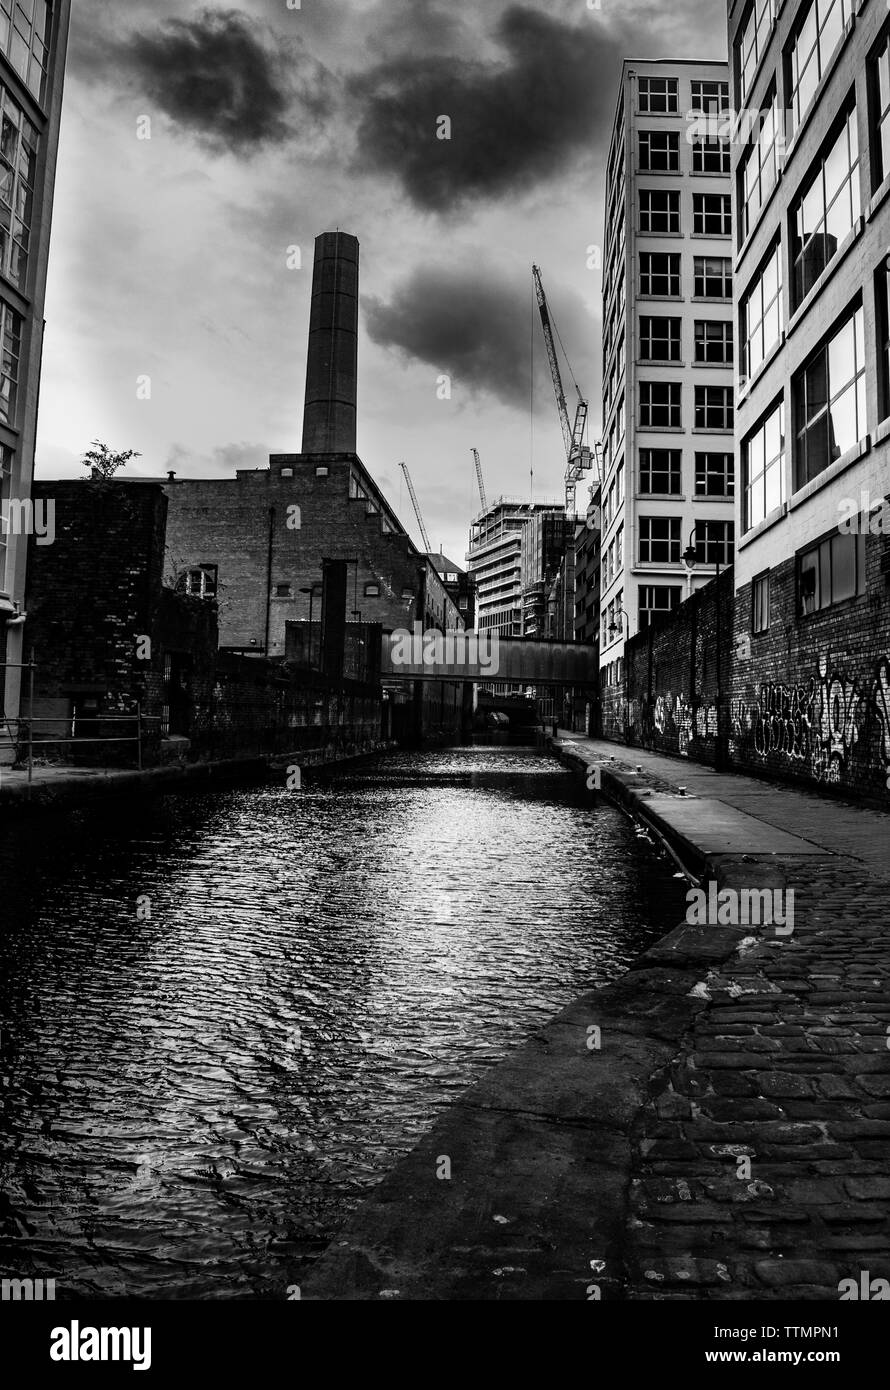 Gloomy, dark day in Manchester, UK Stock Photo